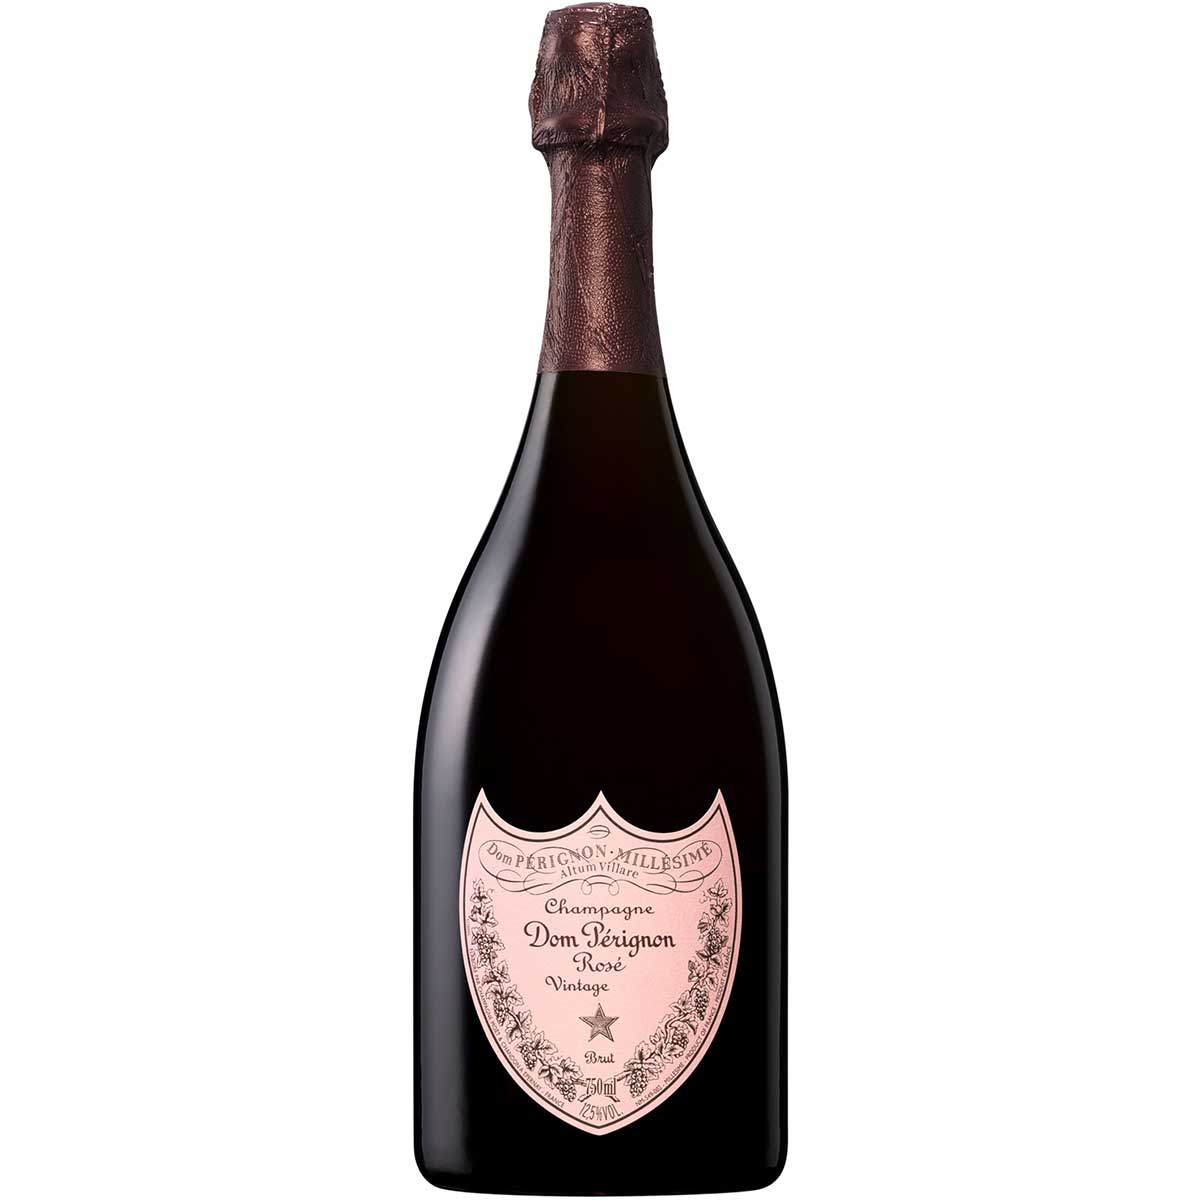 Dom Perignon Rose Champagne 2008